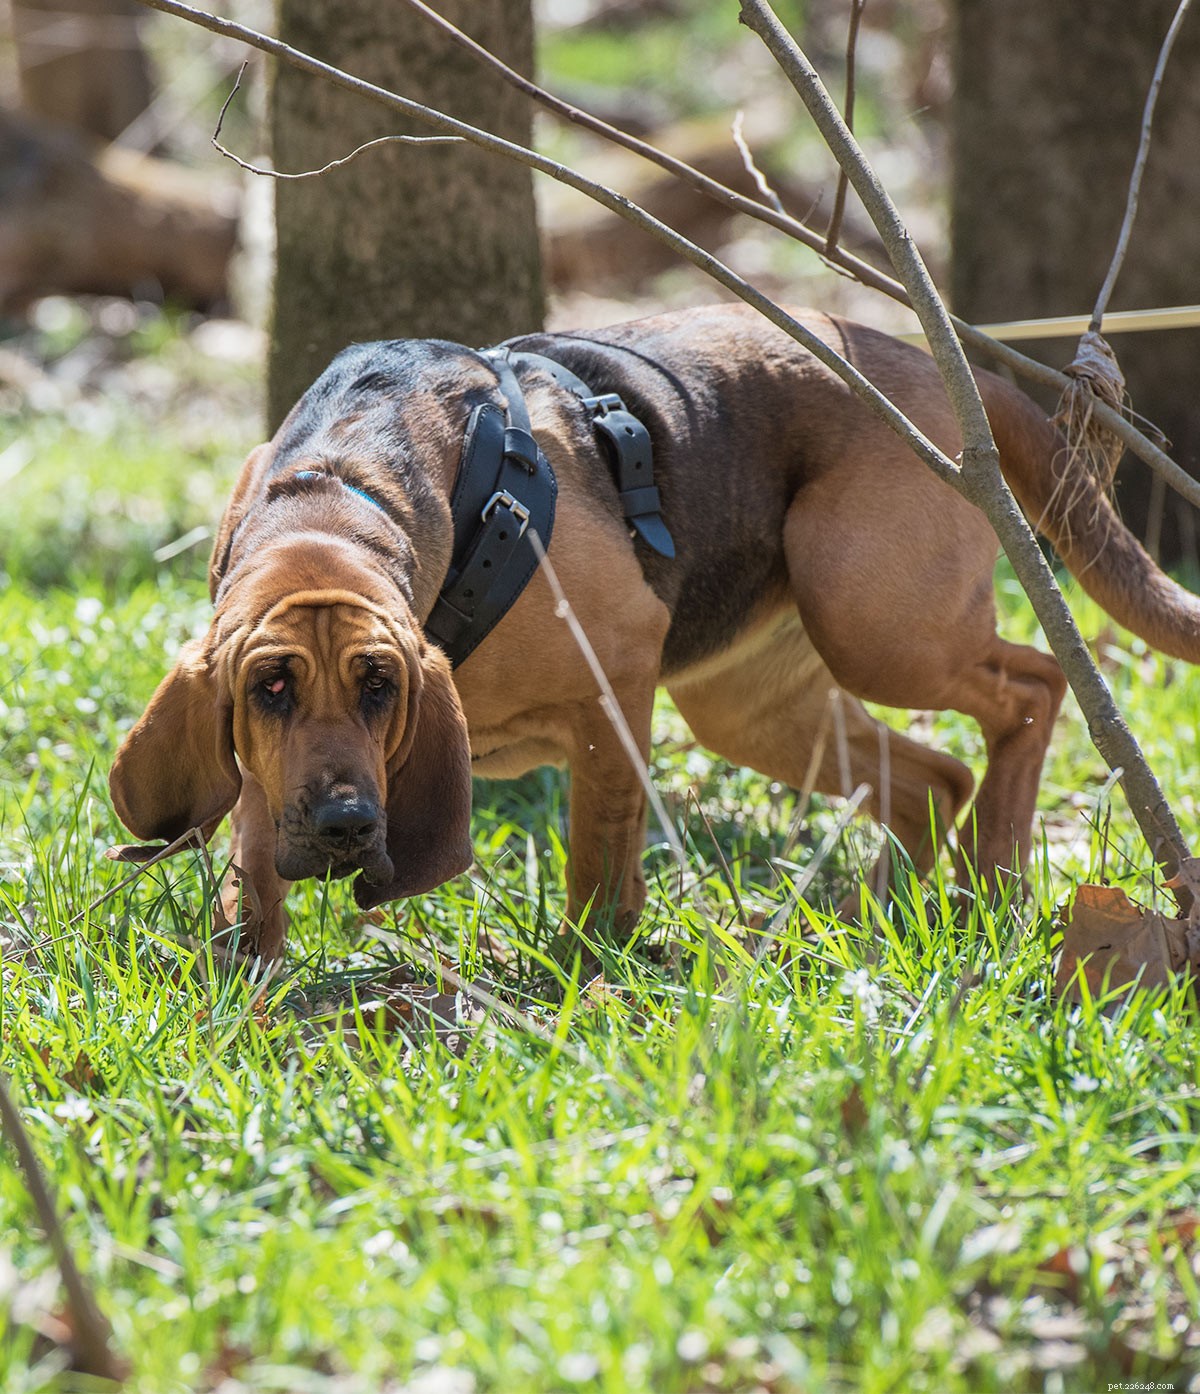 Bloodhound Dog Breed Center – Conoscere i loro pro e contro